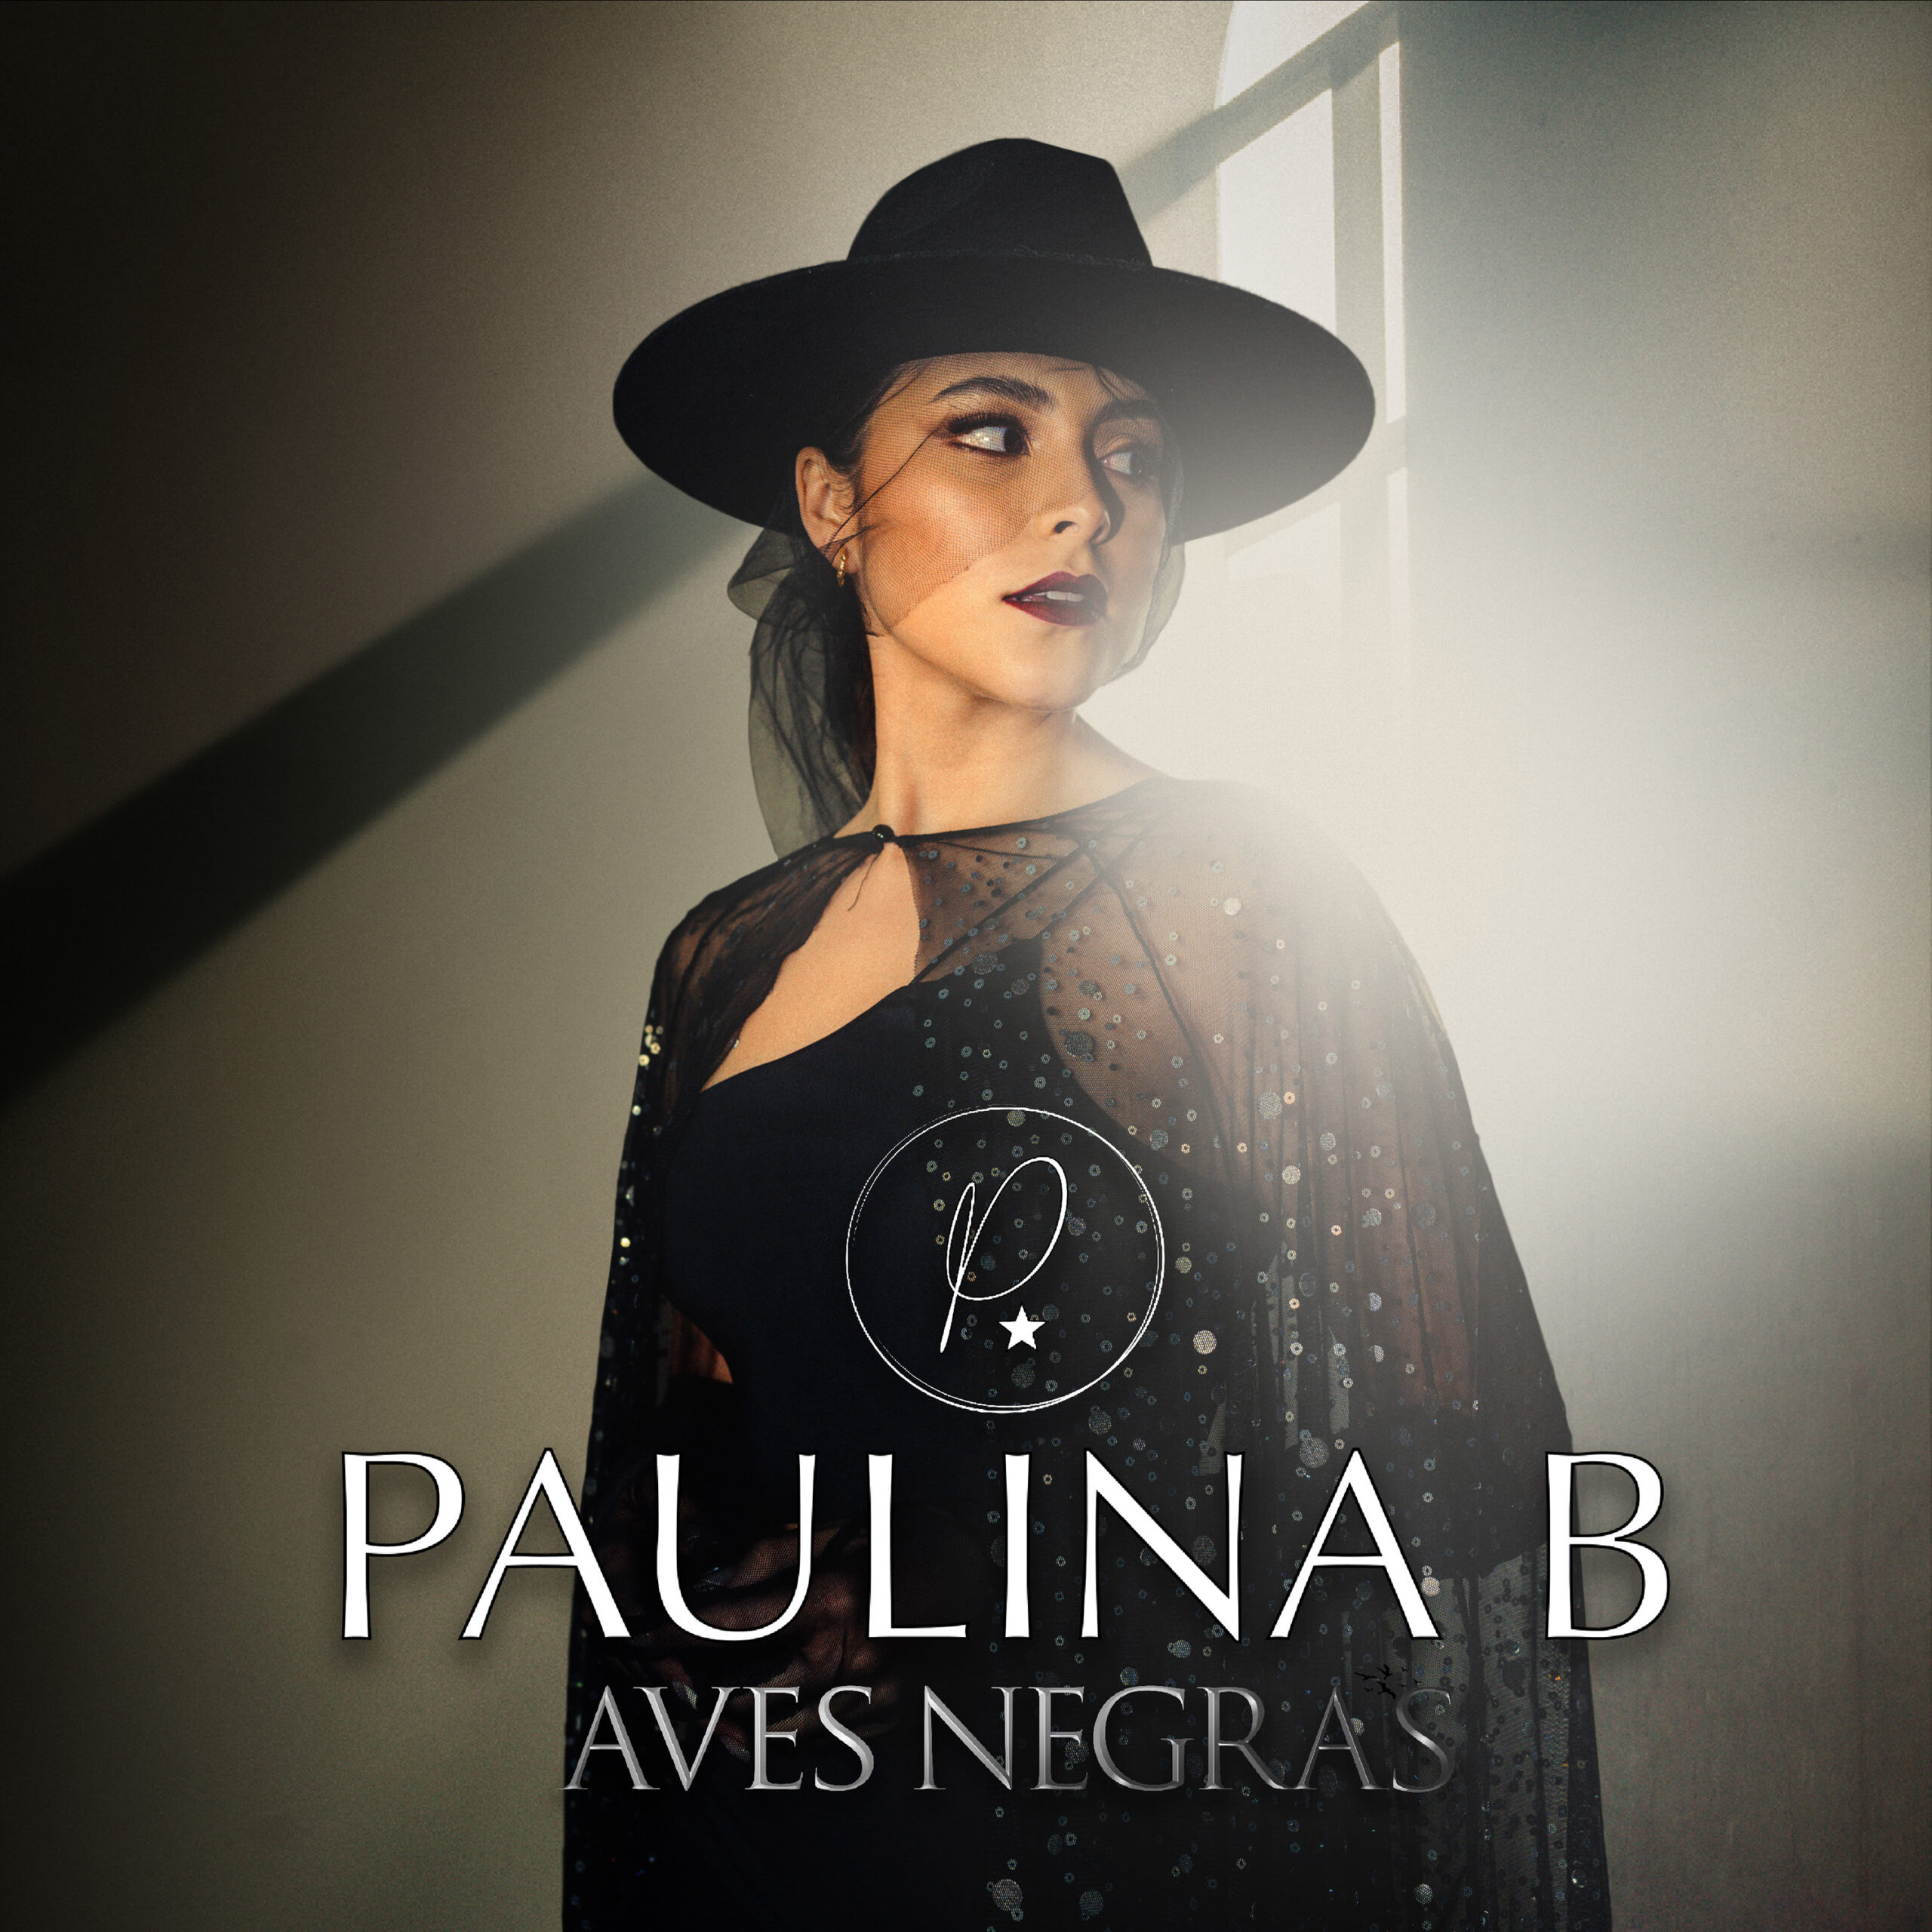 Paulina B hace su presentación en la industria musical con el sencillo «Aves Negras» de la mano de Royalty Records